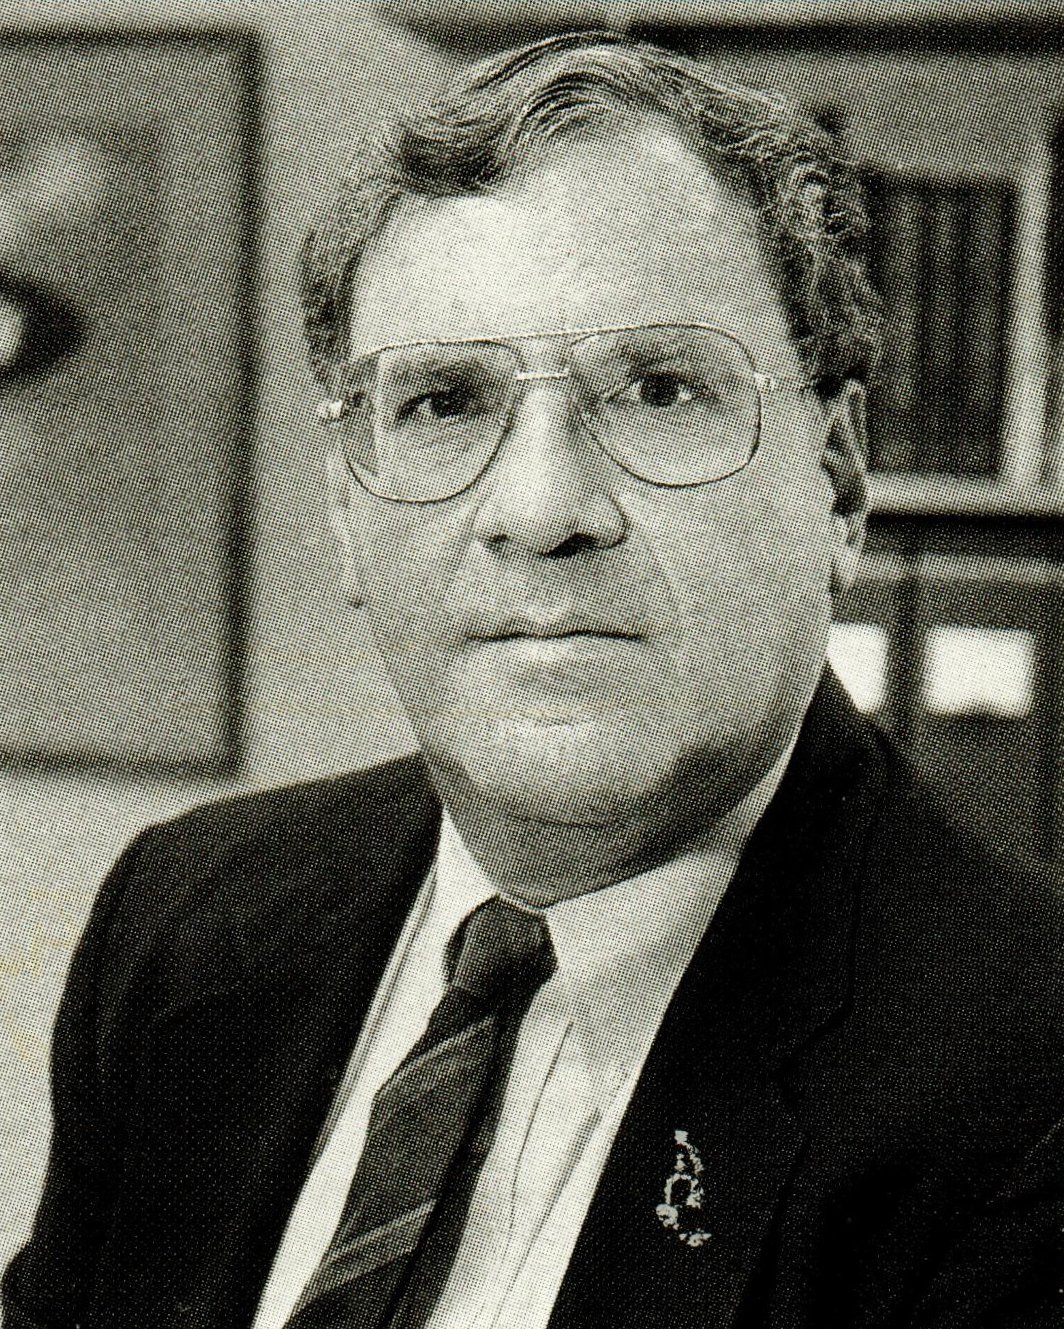 Marvin Goldberg